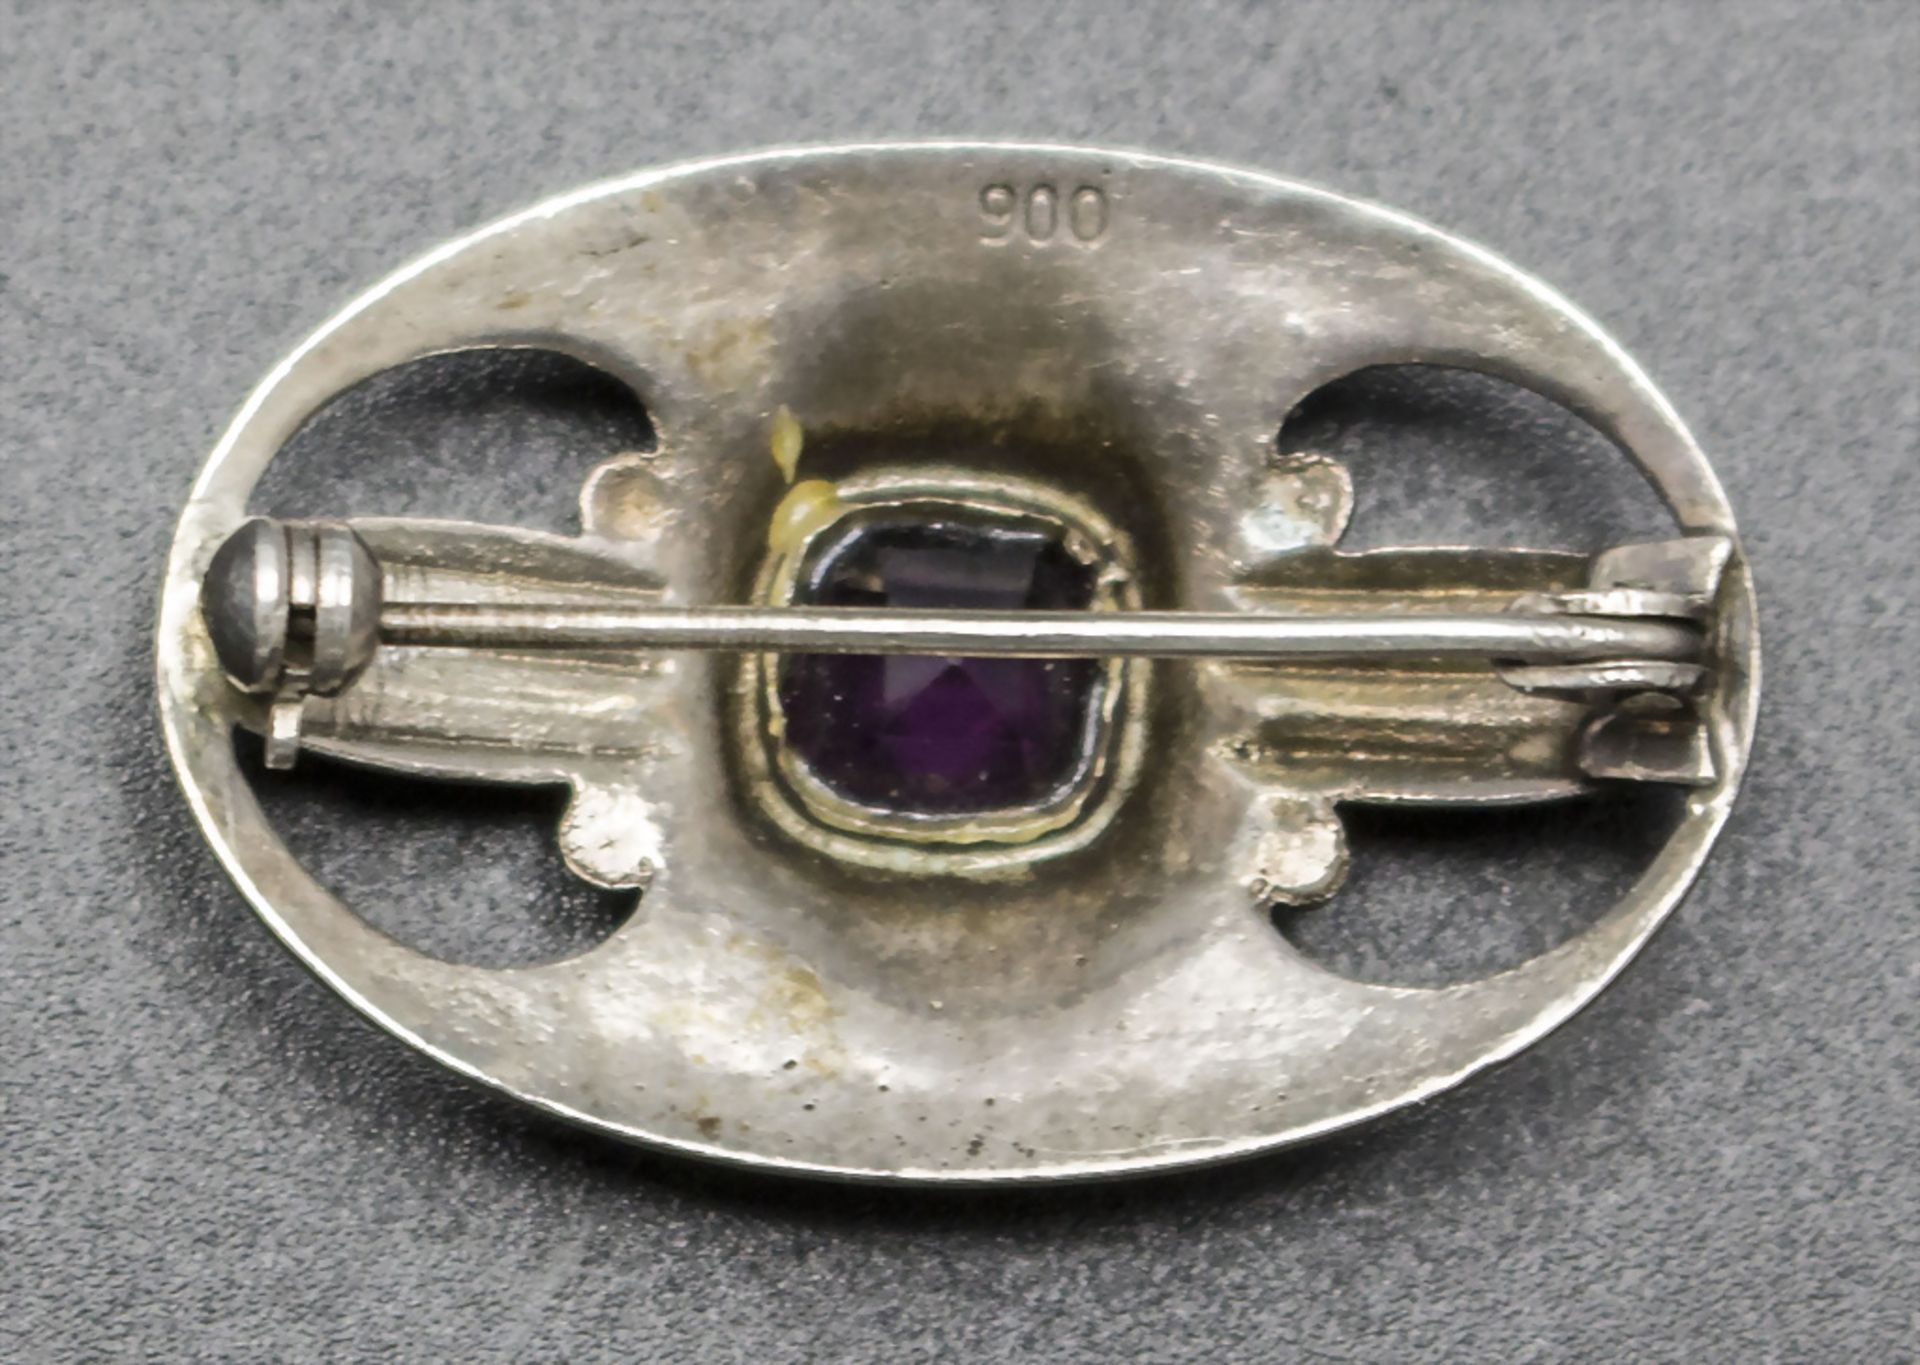 Jugendstil Brosche mit Amethyst / An Art Nouveau silver brooch with Amethyst, wohl deutsch, um 1900 - Image 3 of 3